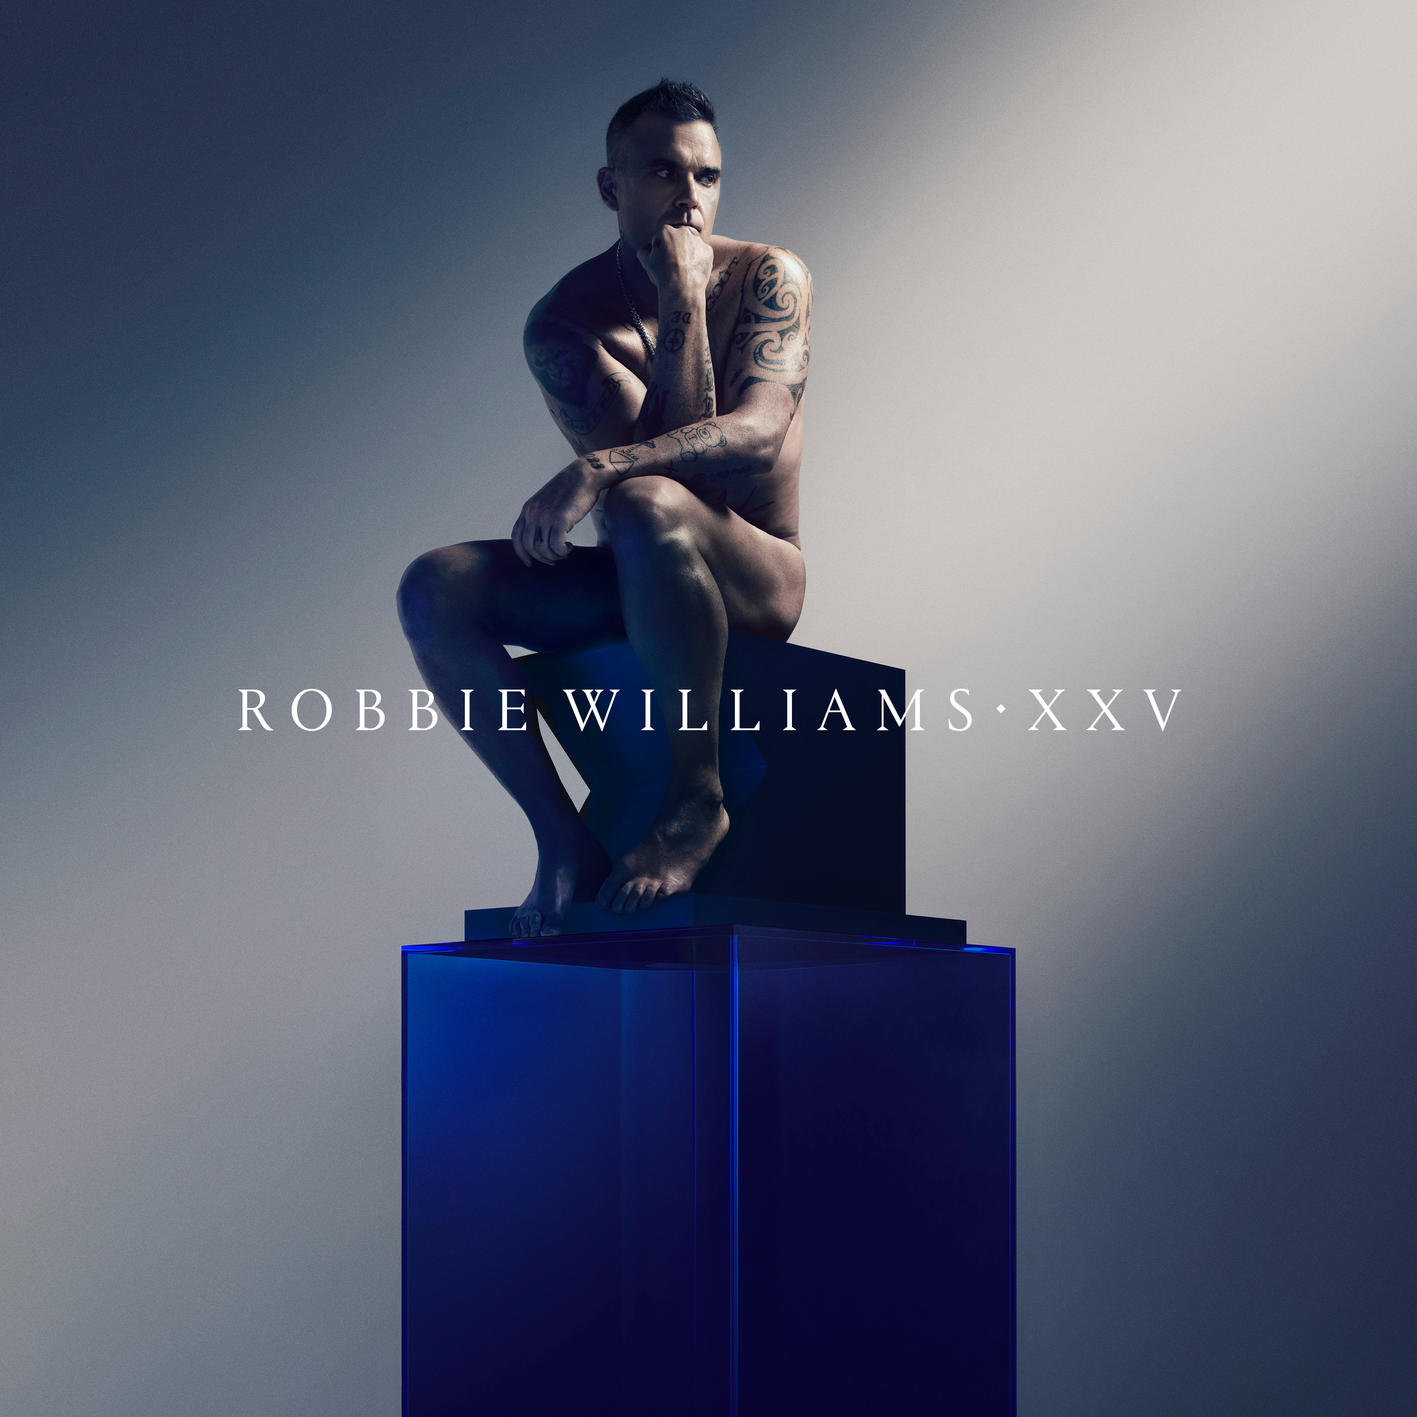 Robbie Williams - XXV (DeLuxe Edition) in DTS-HD. (op speciaal verzoek)